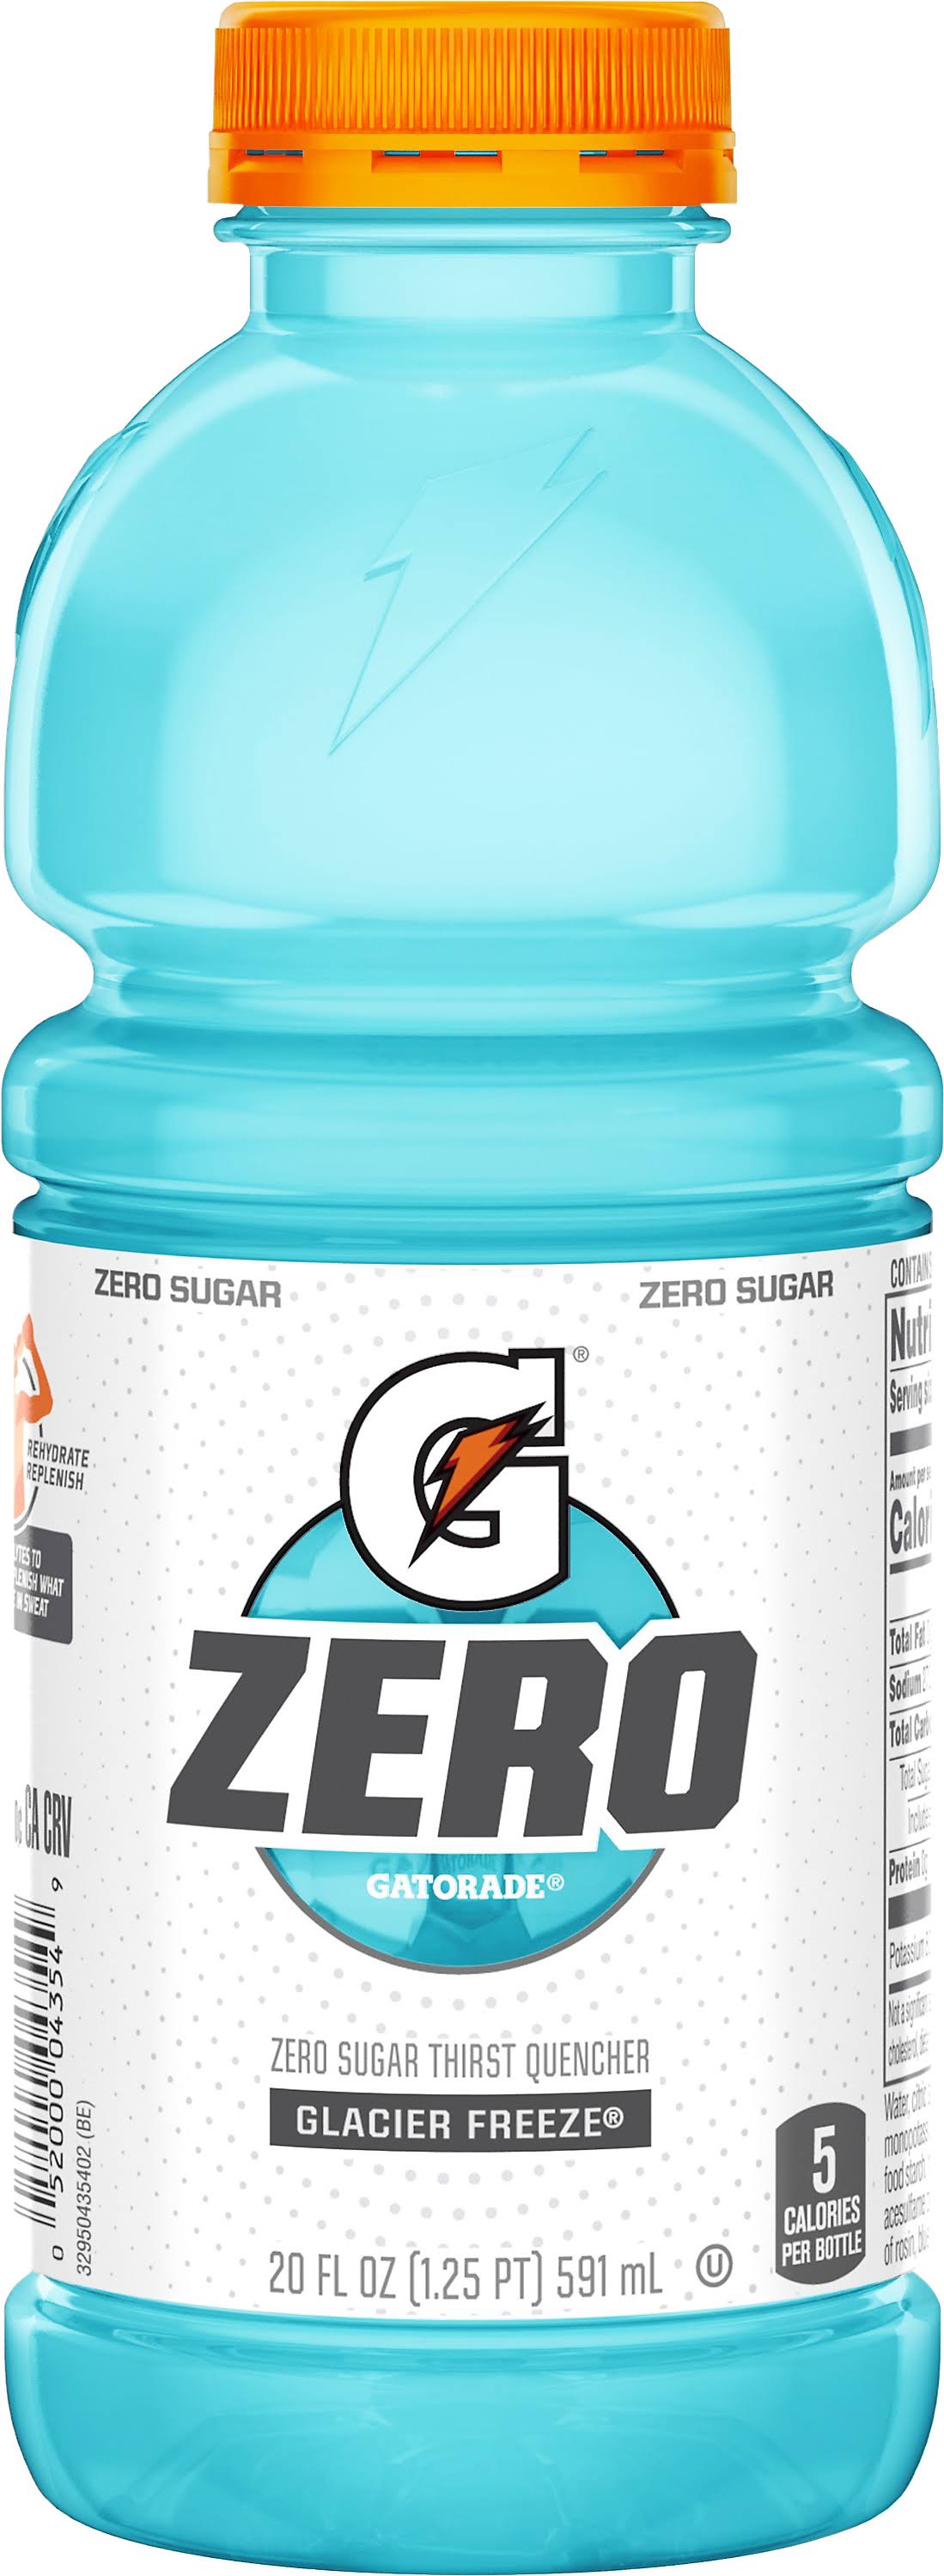 Gatorade Zero Glacier Freeze Zero Sugar Thirst Quencher - 20oz